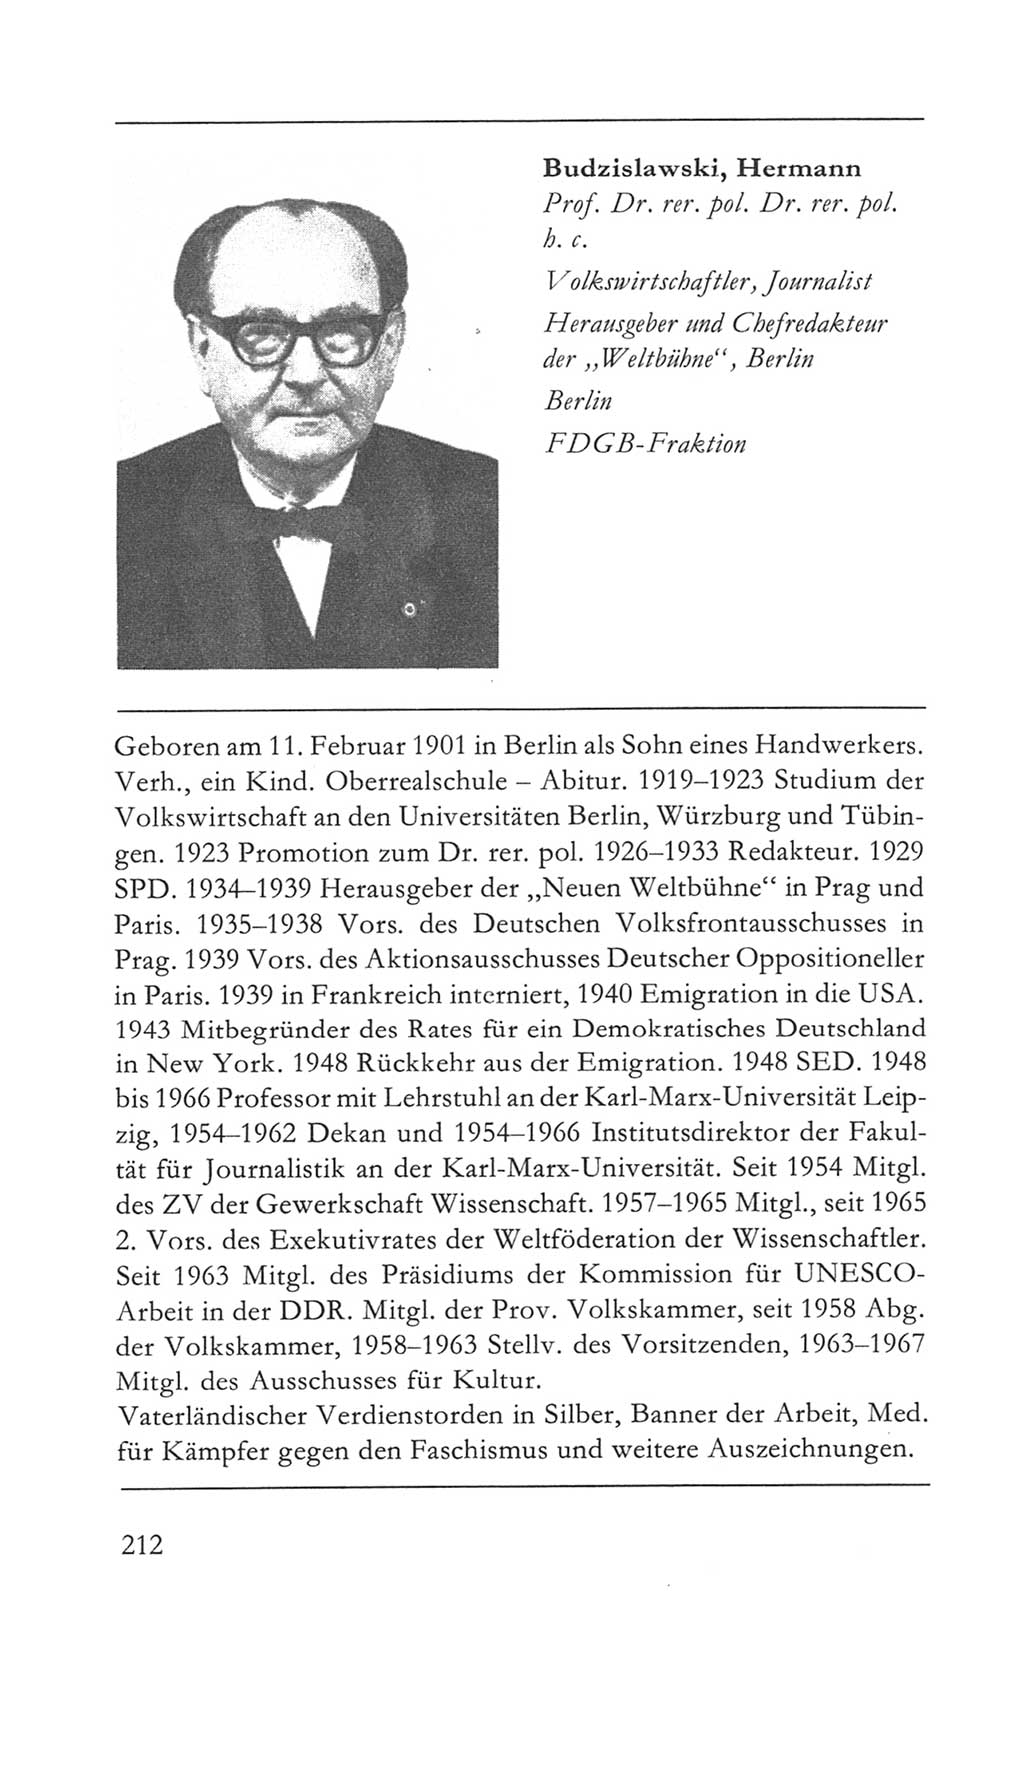 Volkskammer (VK) der Deutschen Demokratischen Republik (DDR) 5. Wahlperiode 1967-1971, Seite 212 (VK. DDR 5. WP. 1967-1971, S. 212)